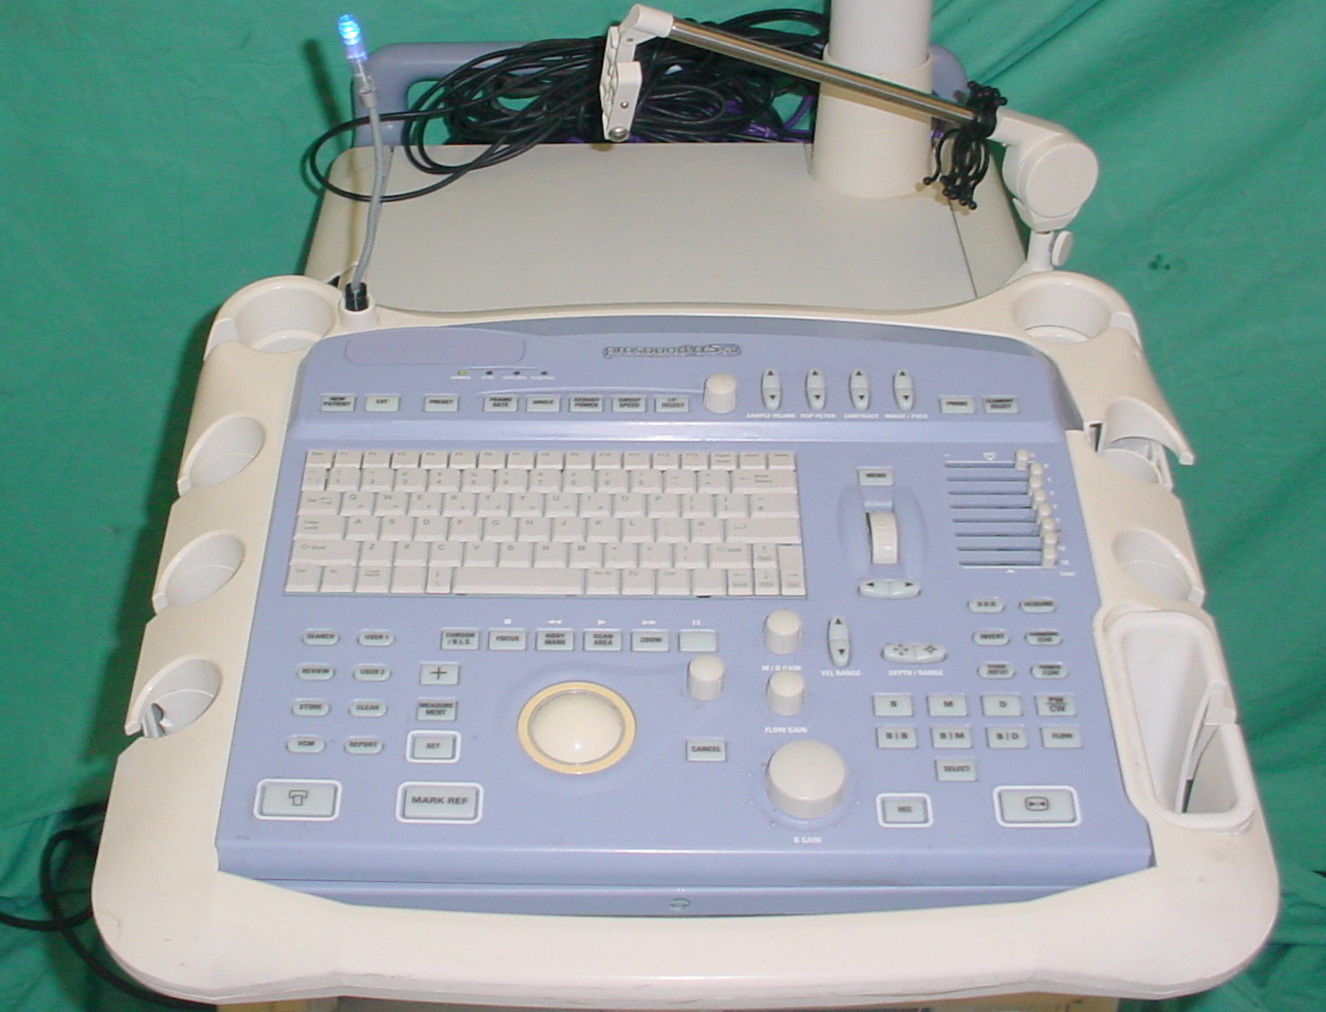 Aloka Prosound SSD-a5 sv Ultrasound System, Cart Based ~ No Probes DIAGNOSTIC ULTRASOUND MACHINES FOR SALE